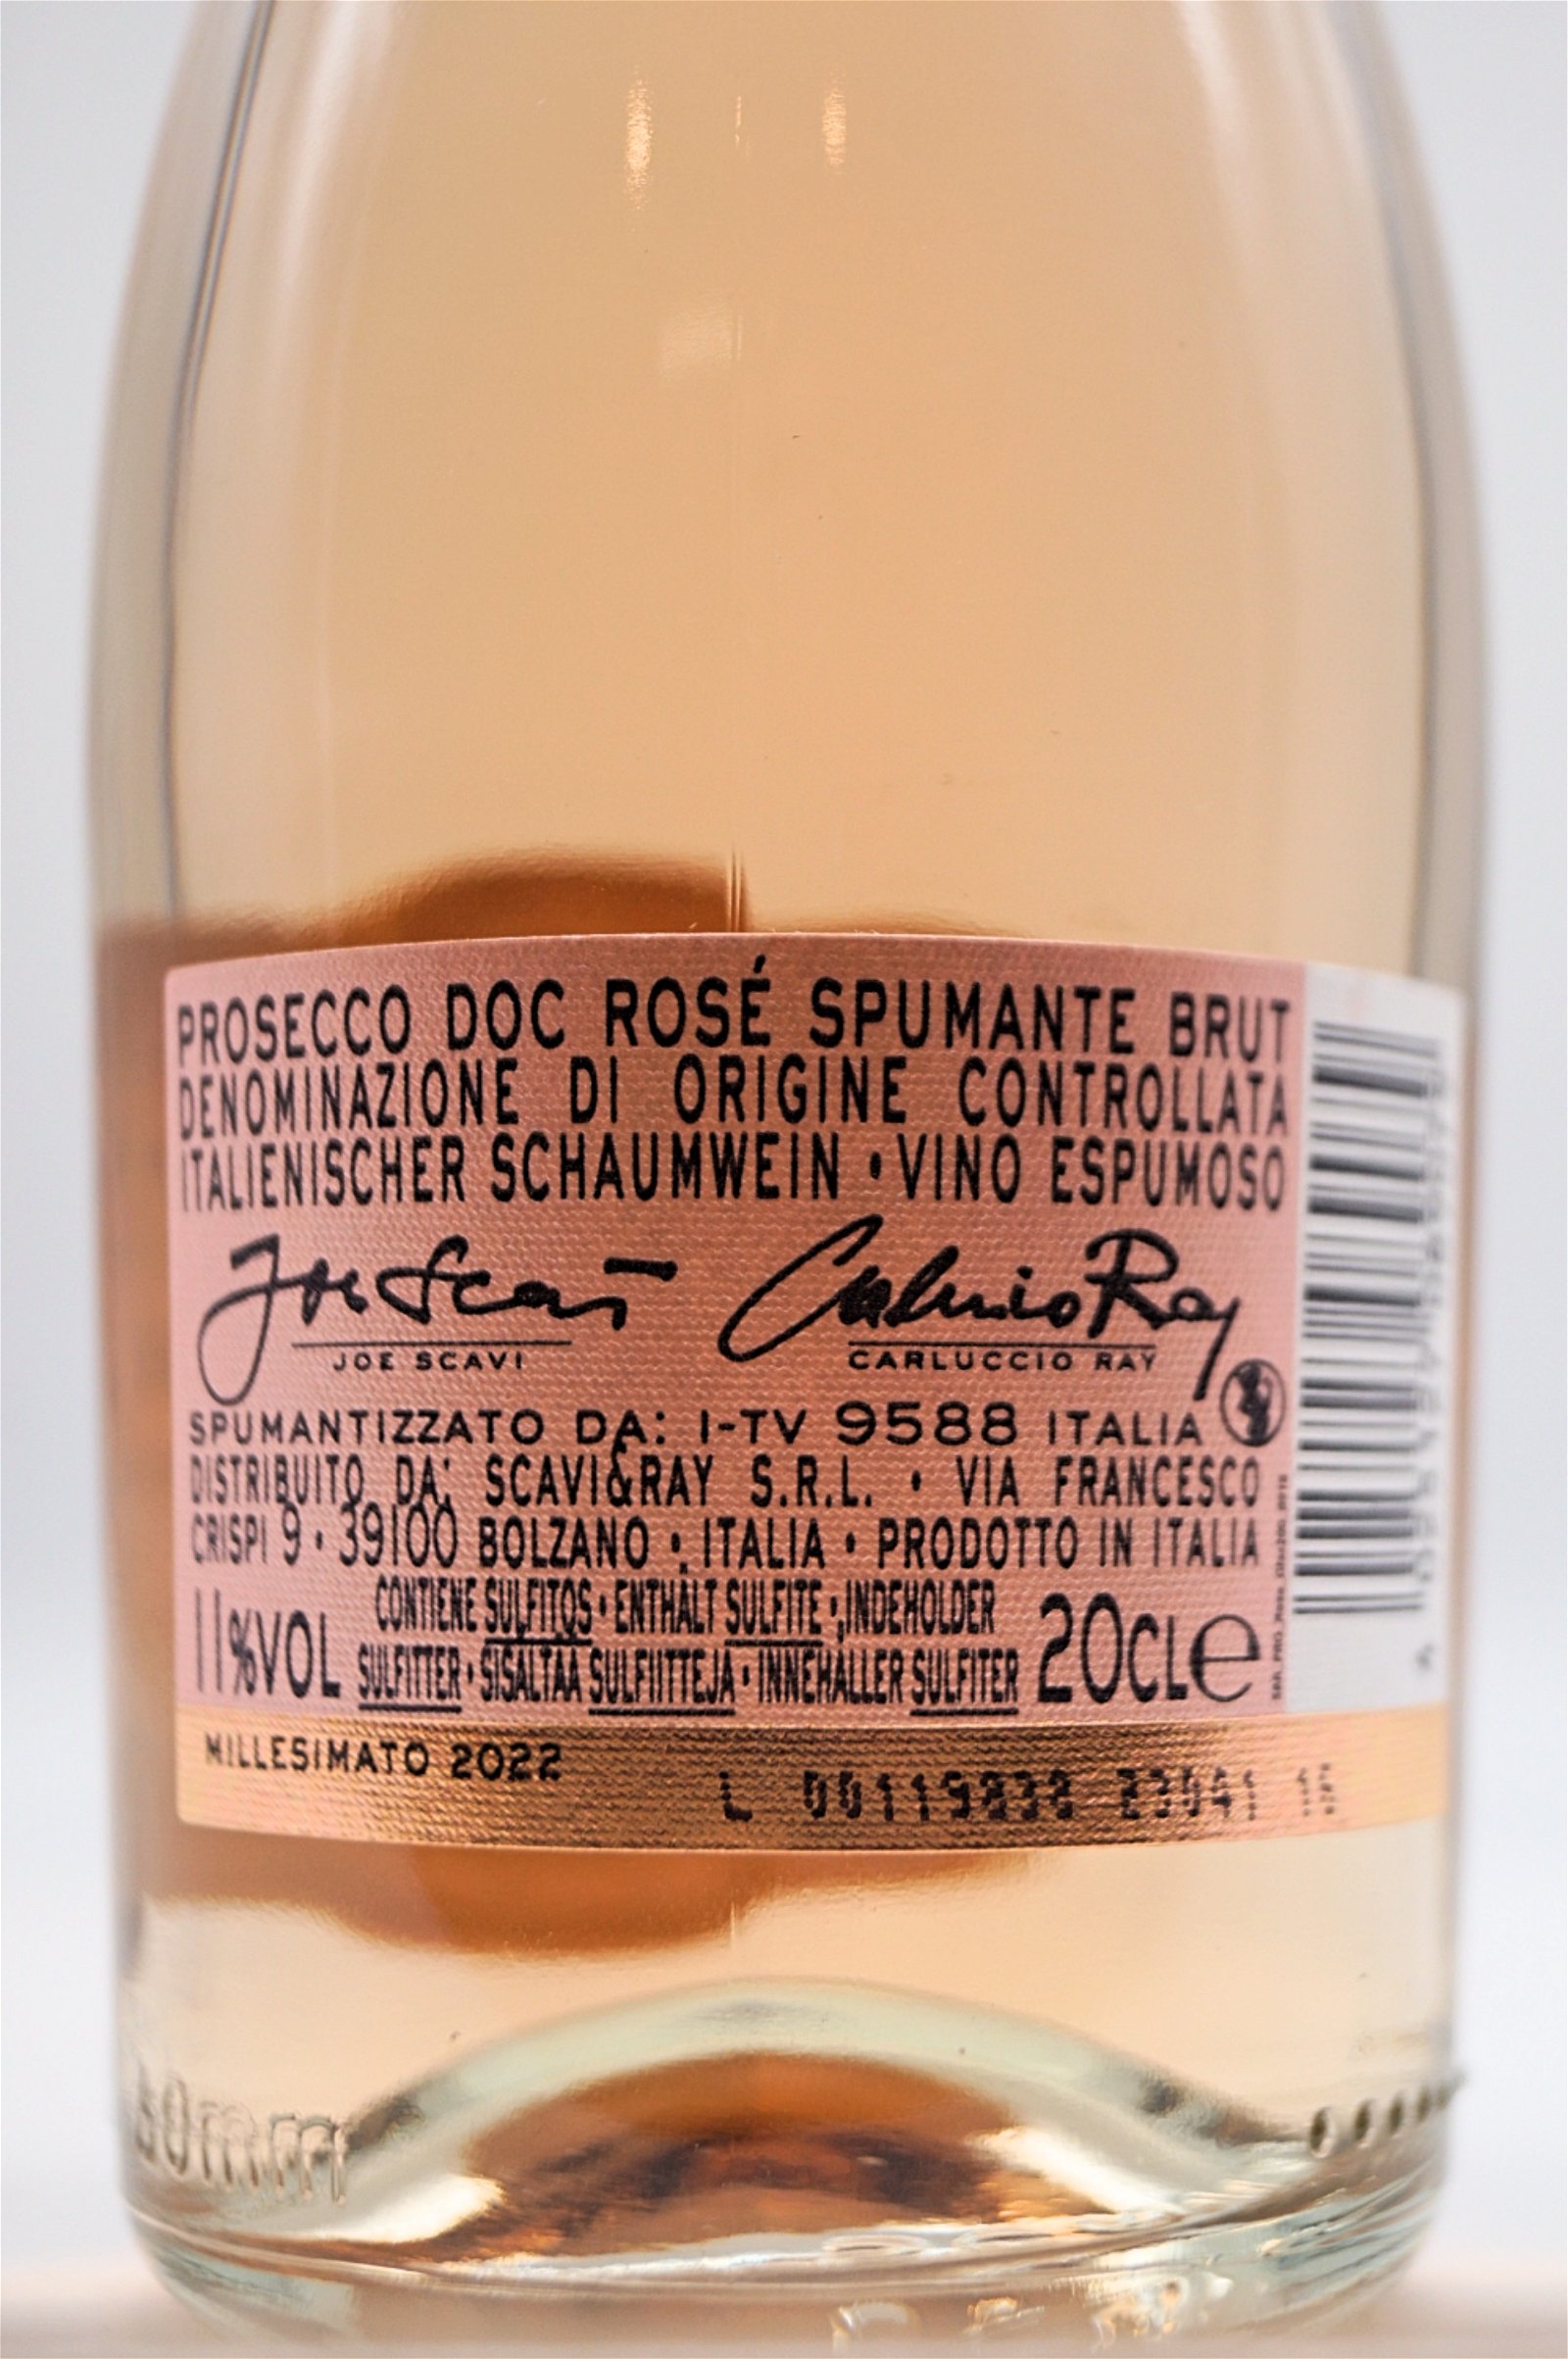 Scavi & Ray Prosecco Spumante Rose 0,2l